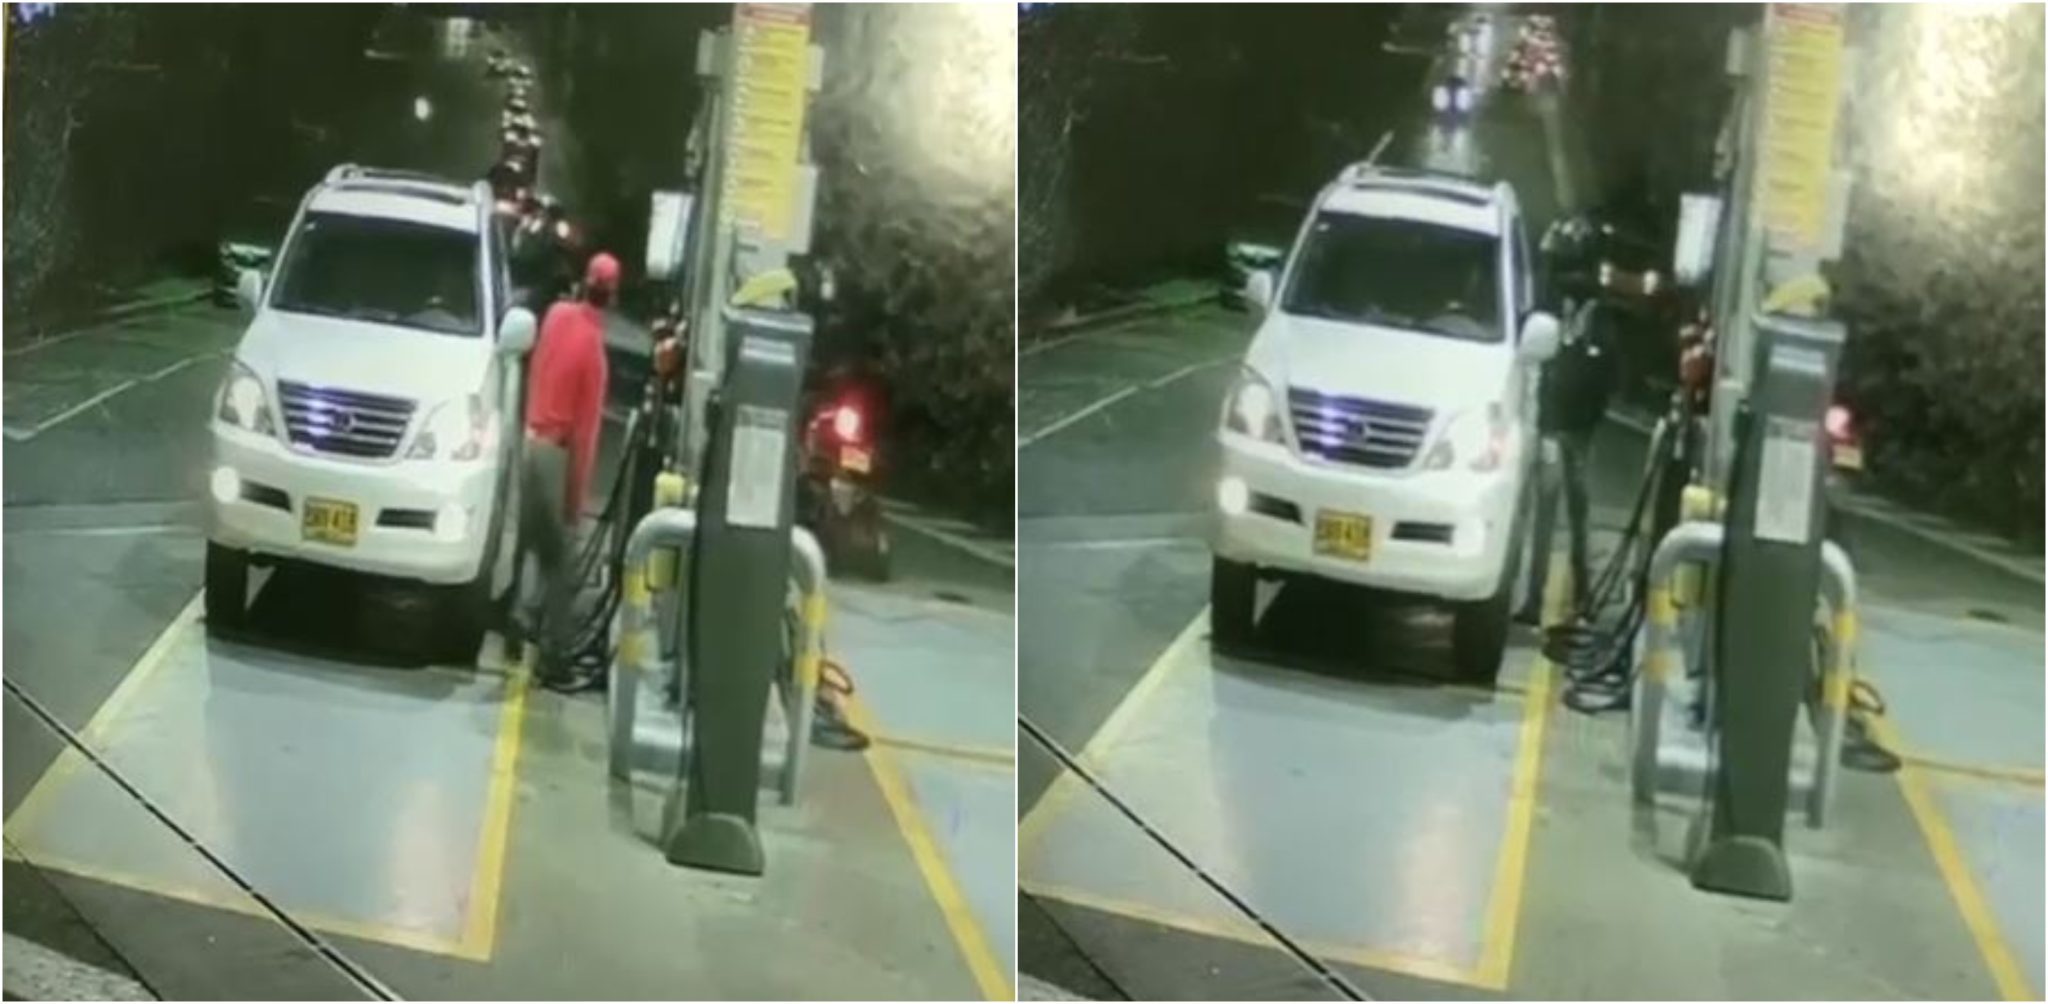 [Video] Así fue el momento en que atracaron a pasajeros de una camioneta en una gasolinera en Medellín